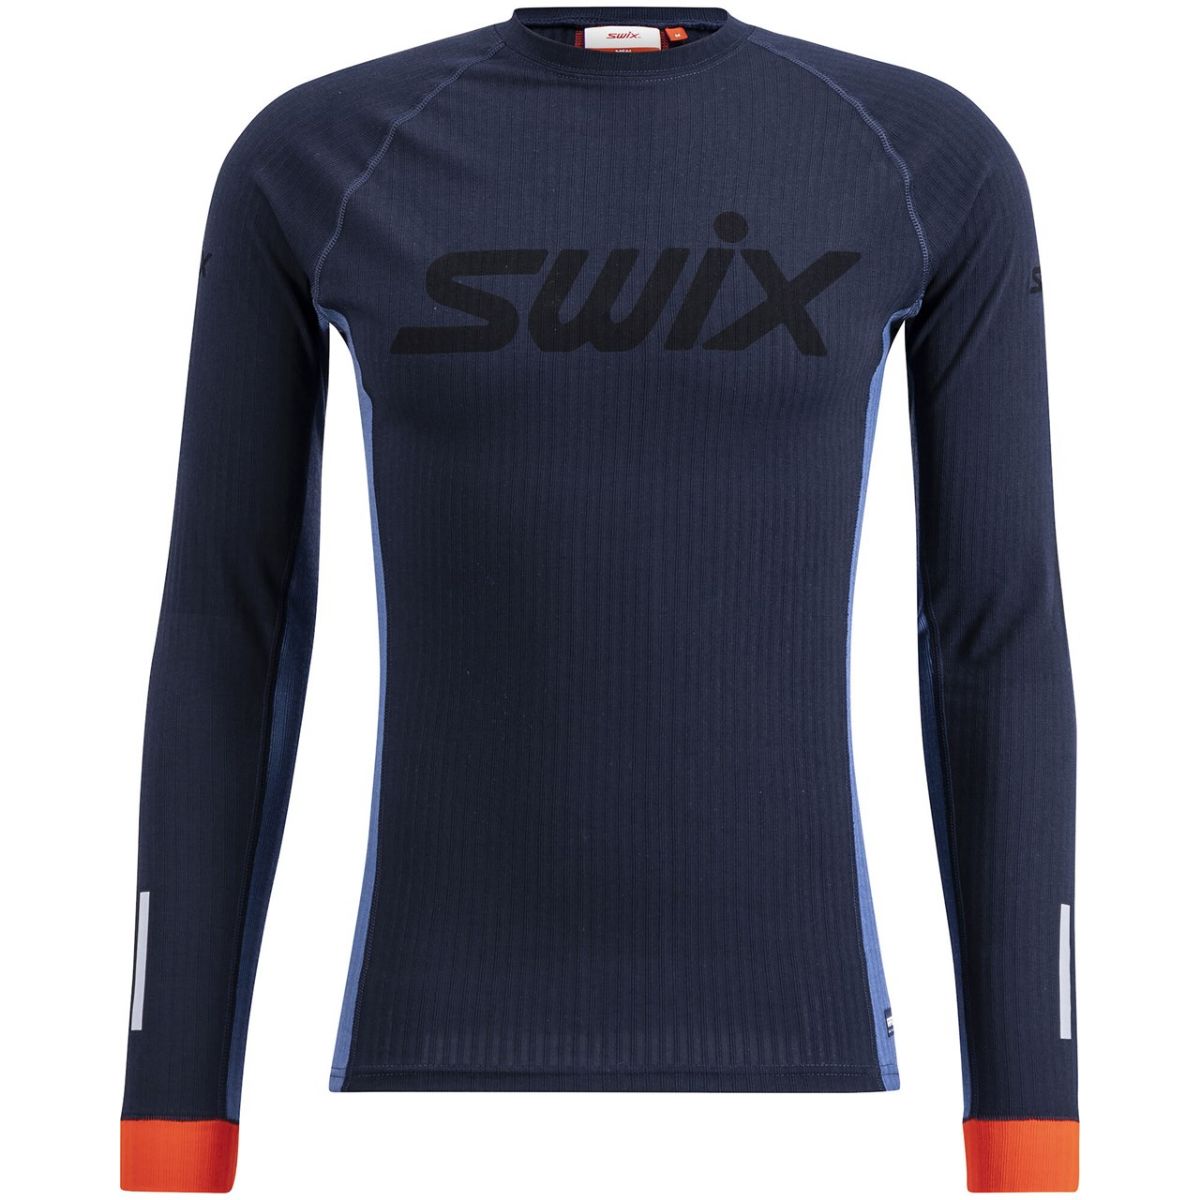 swix-roadline-racex-long-sleeve-m-dark-navylake-blue